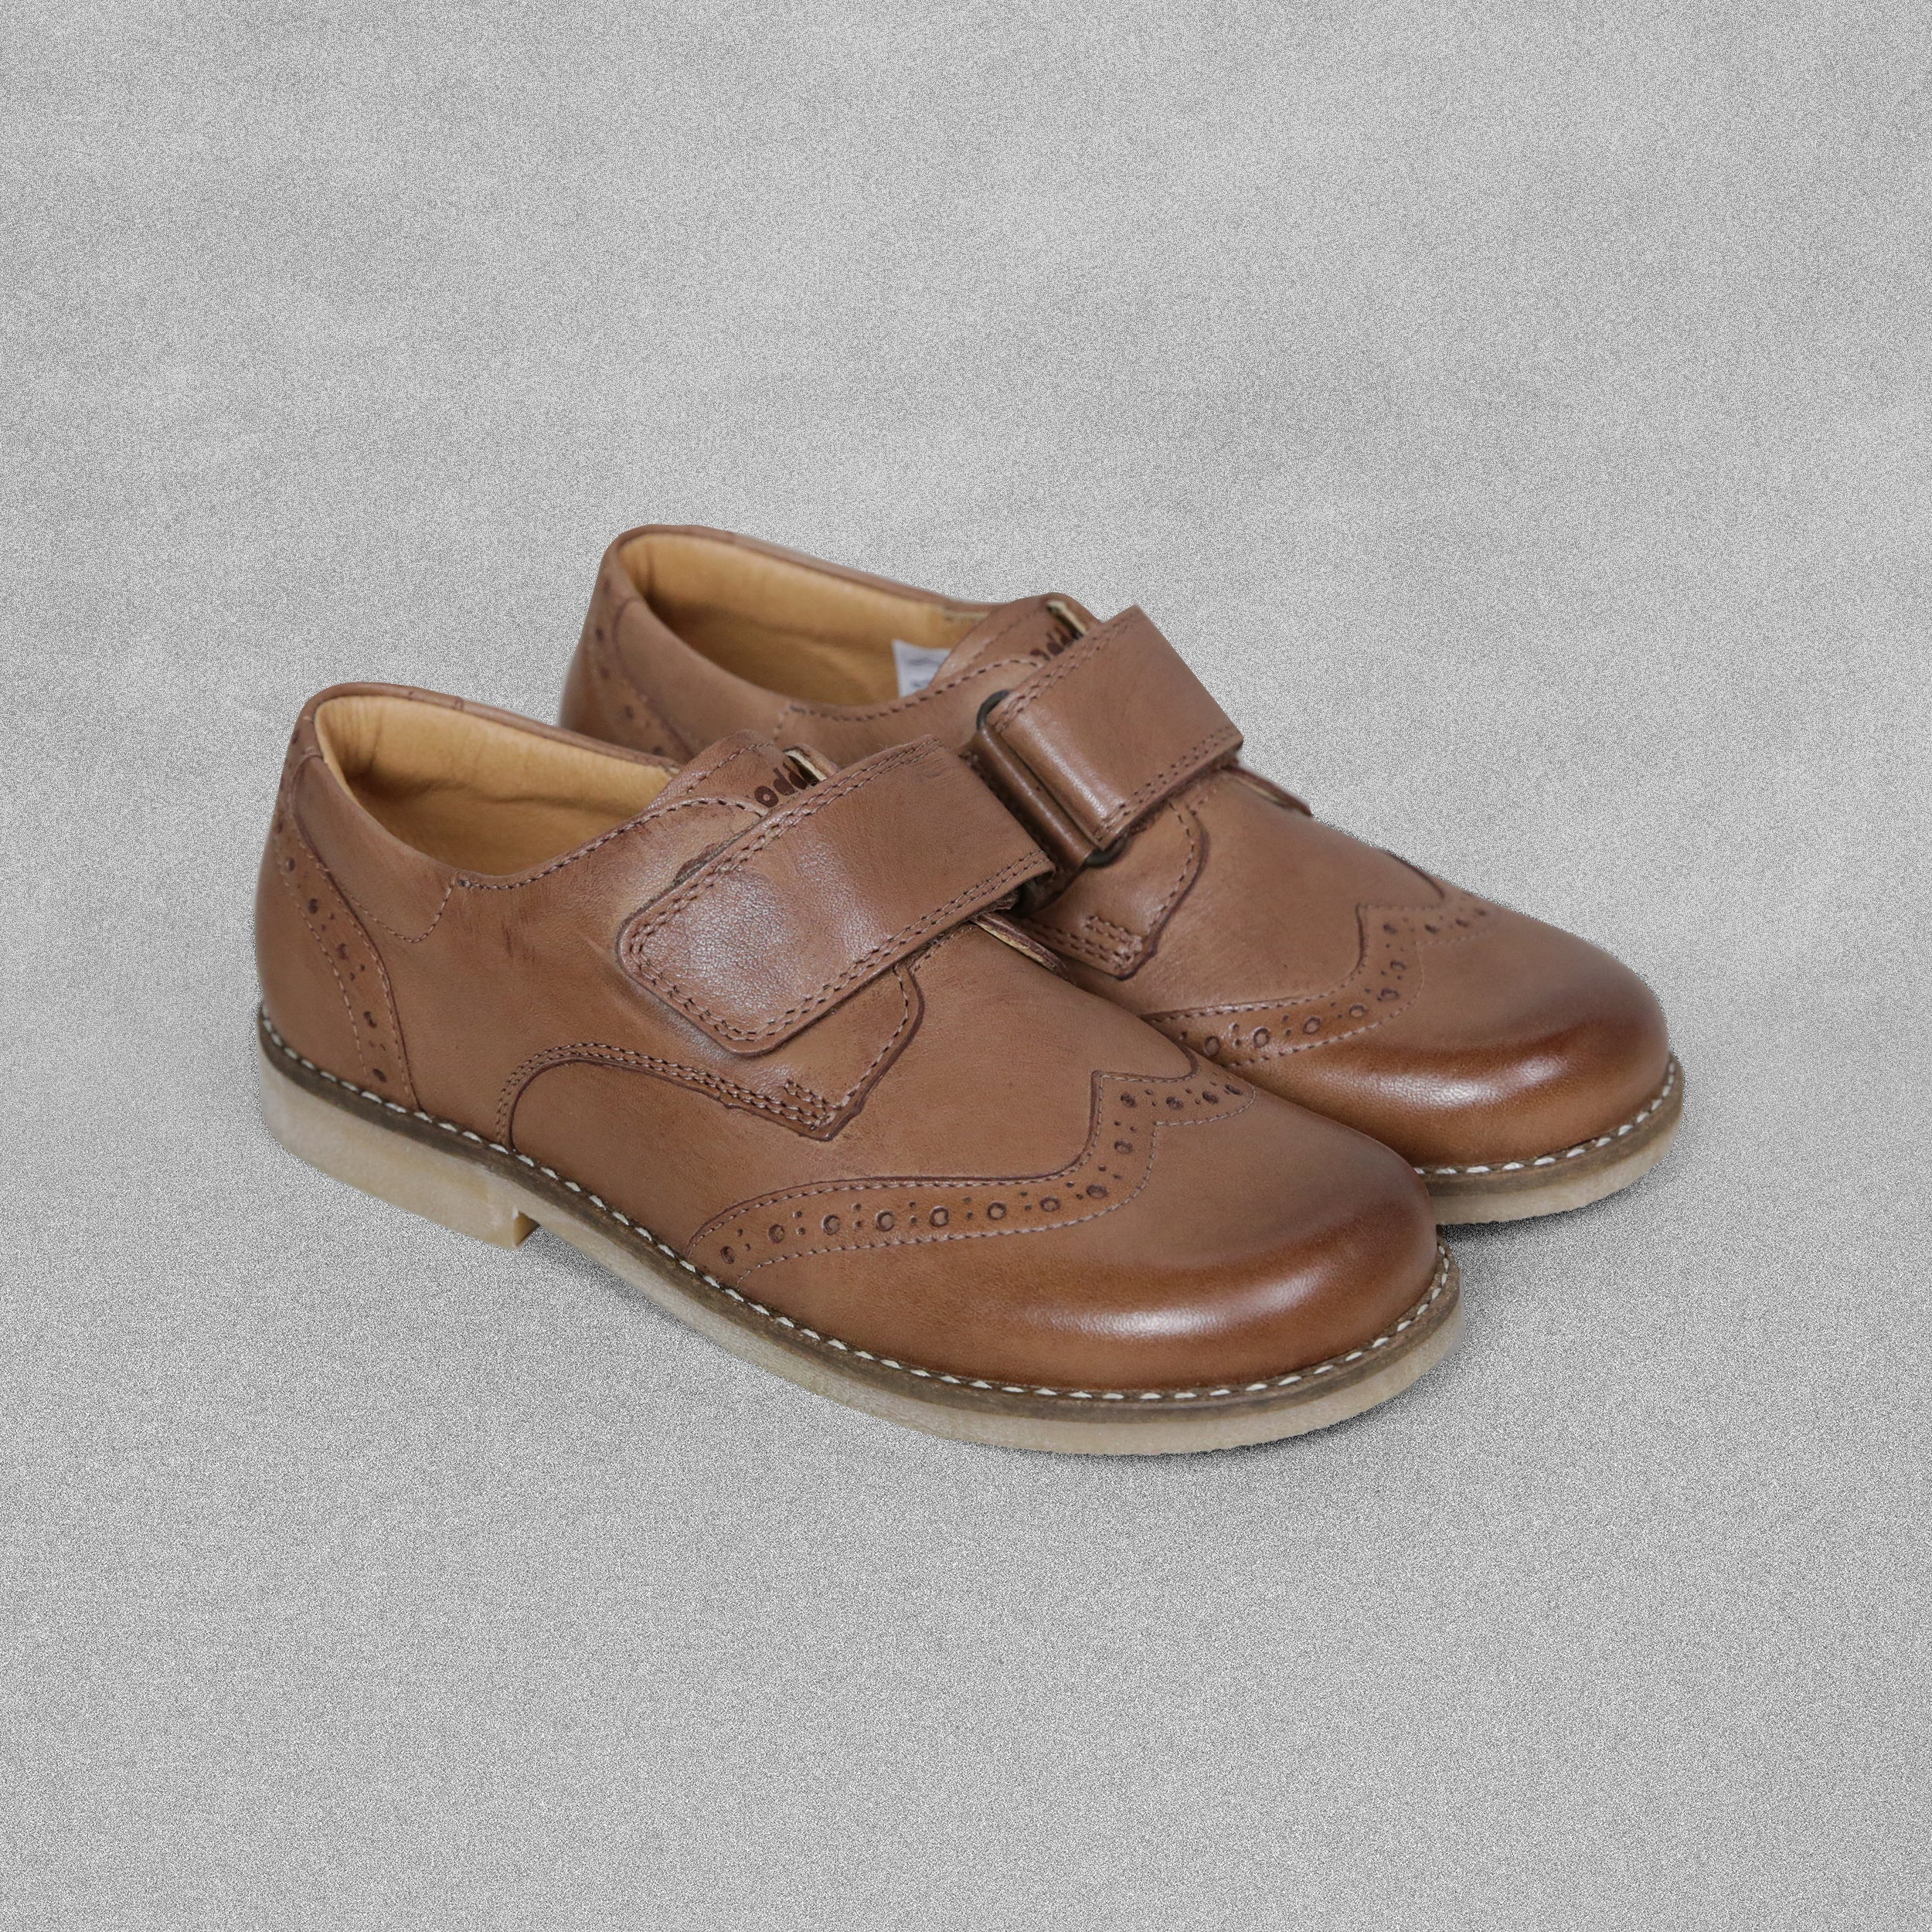 'Froddo' Tan Brogue Shoes with Velcro Strap - EU33